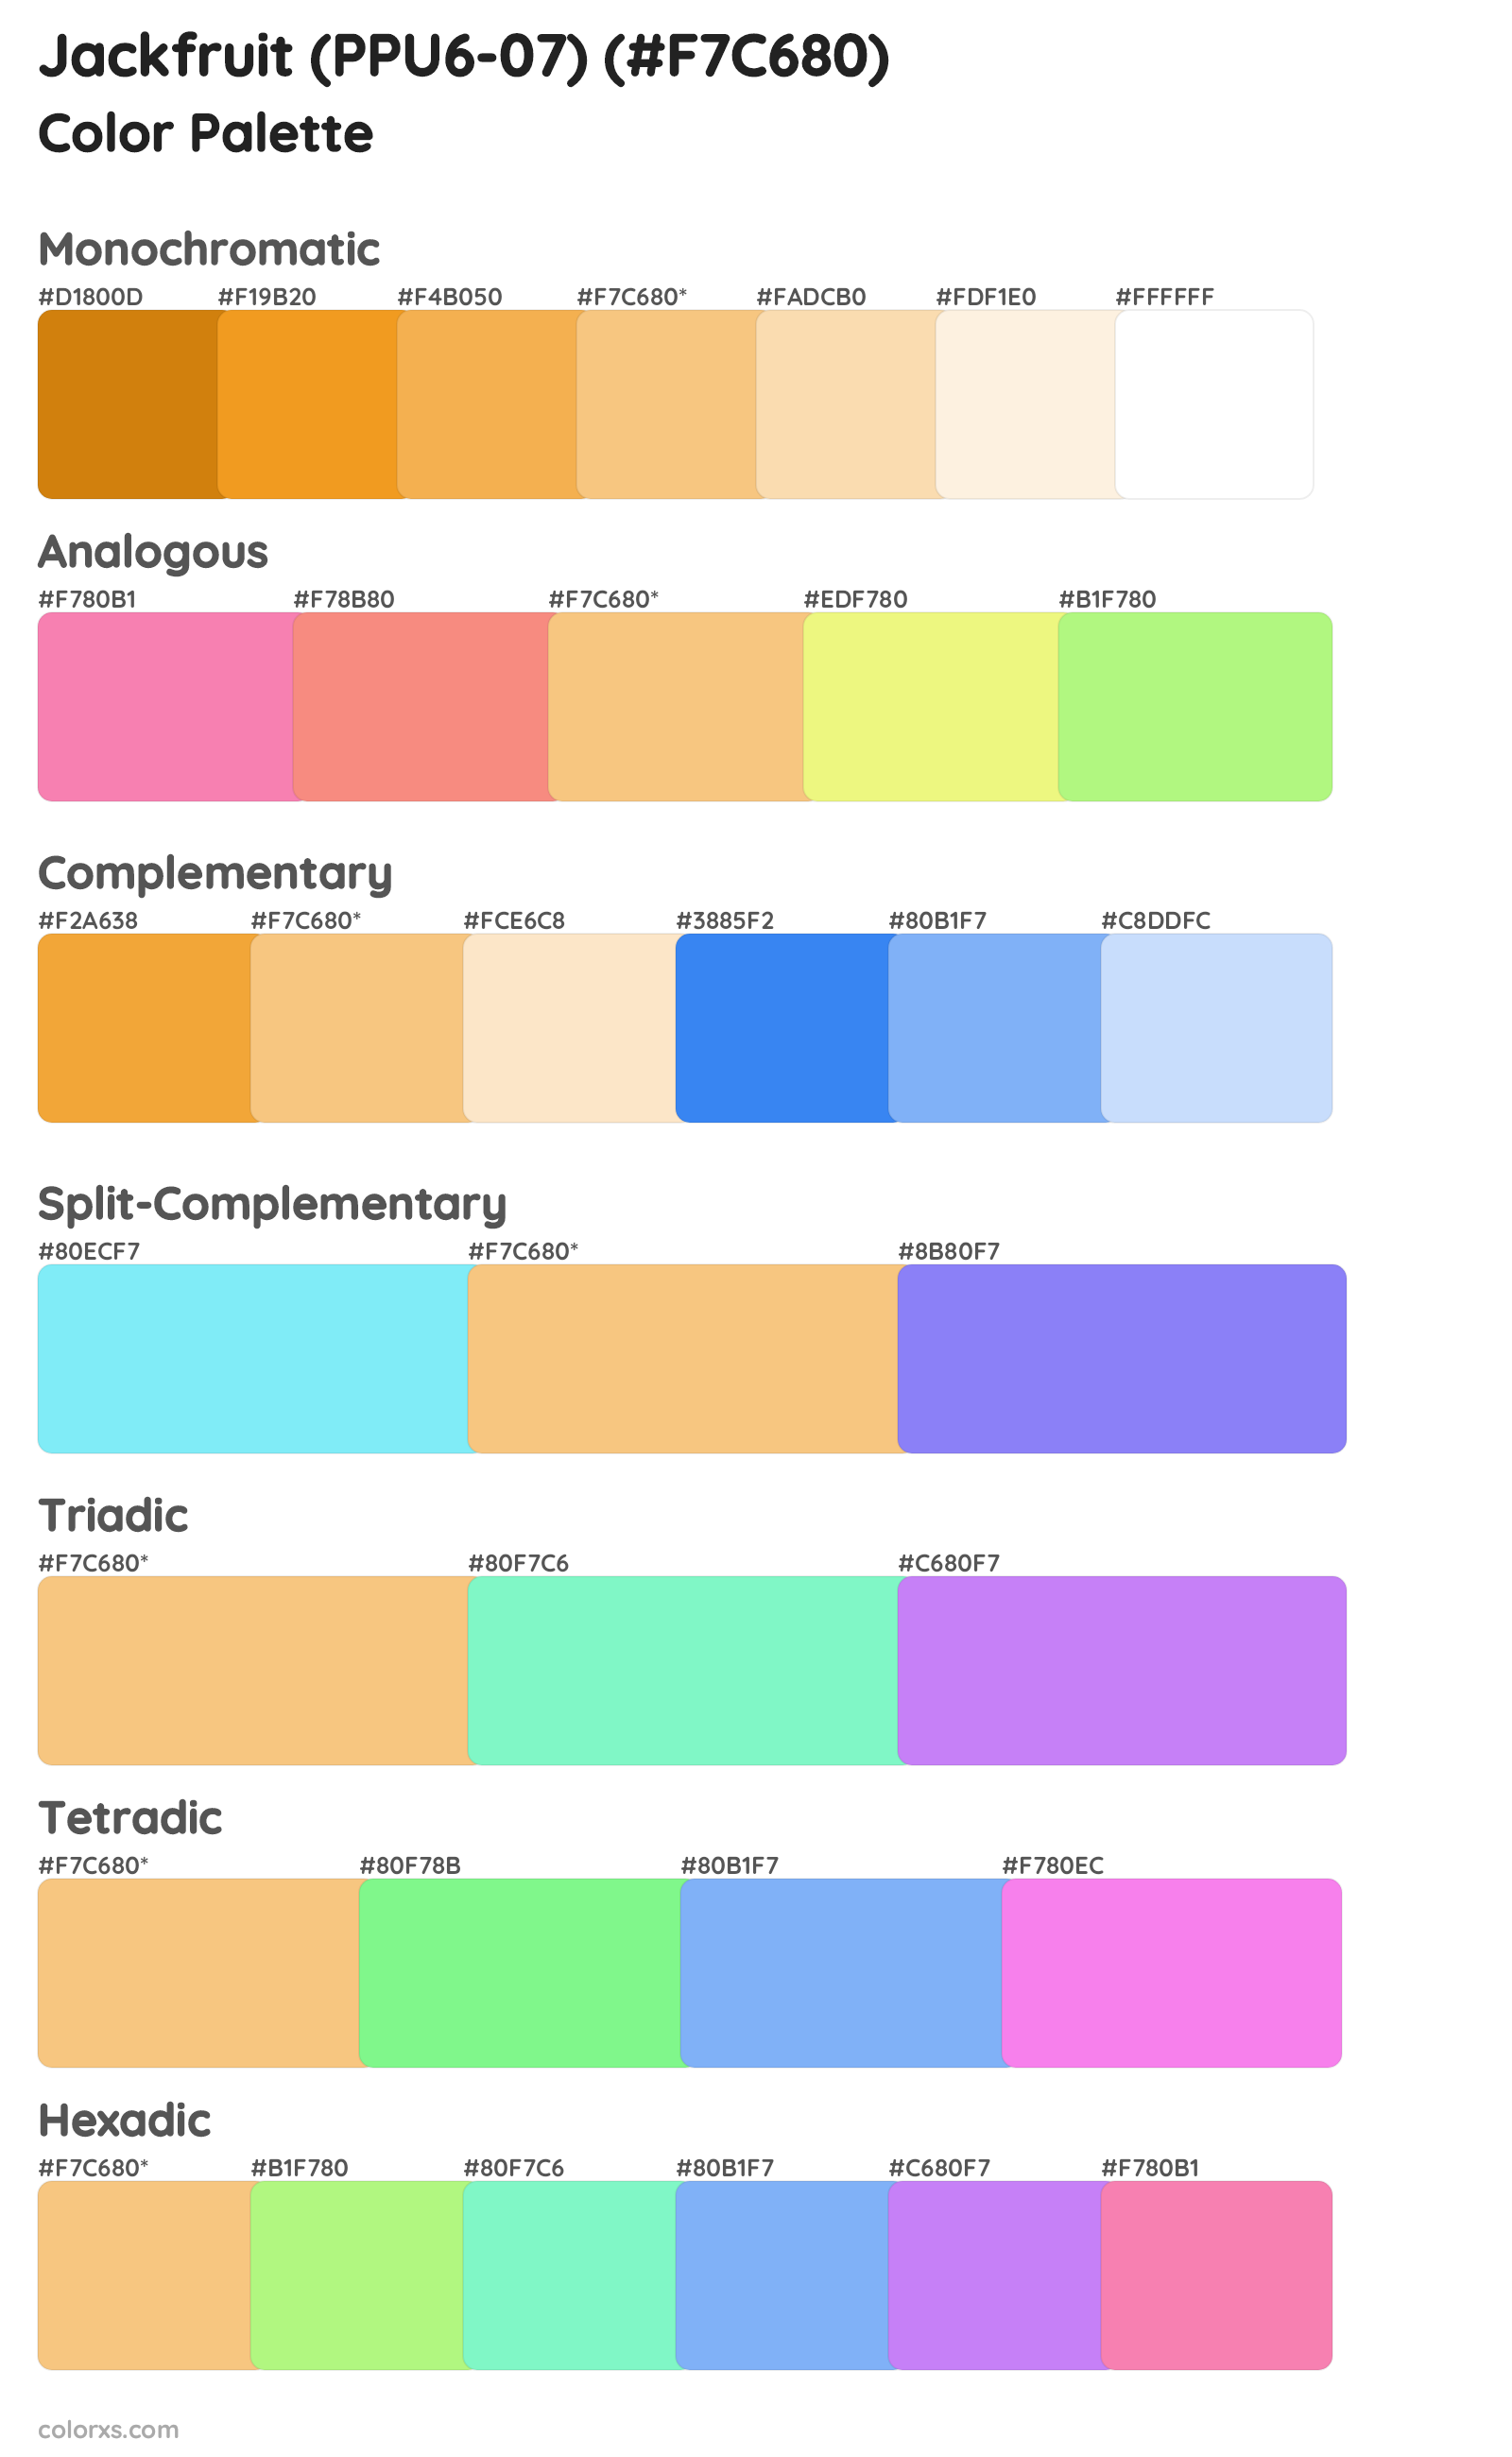 Jackfruit (PPU6-07) Color Scheme Palettes